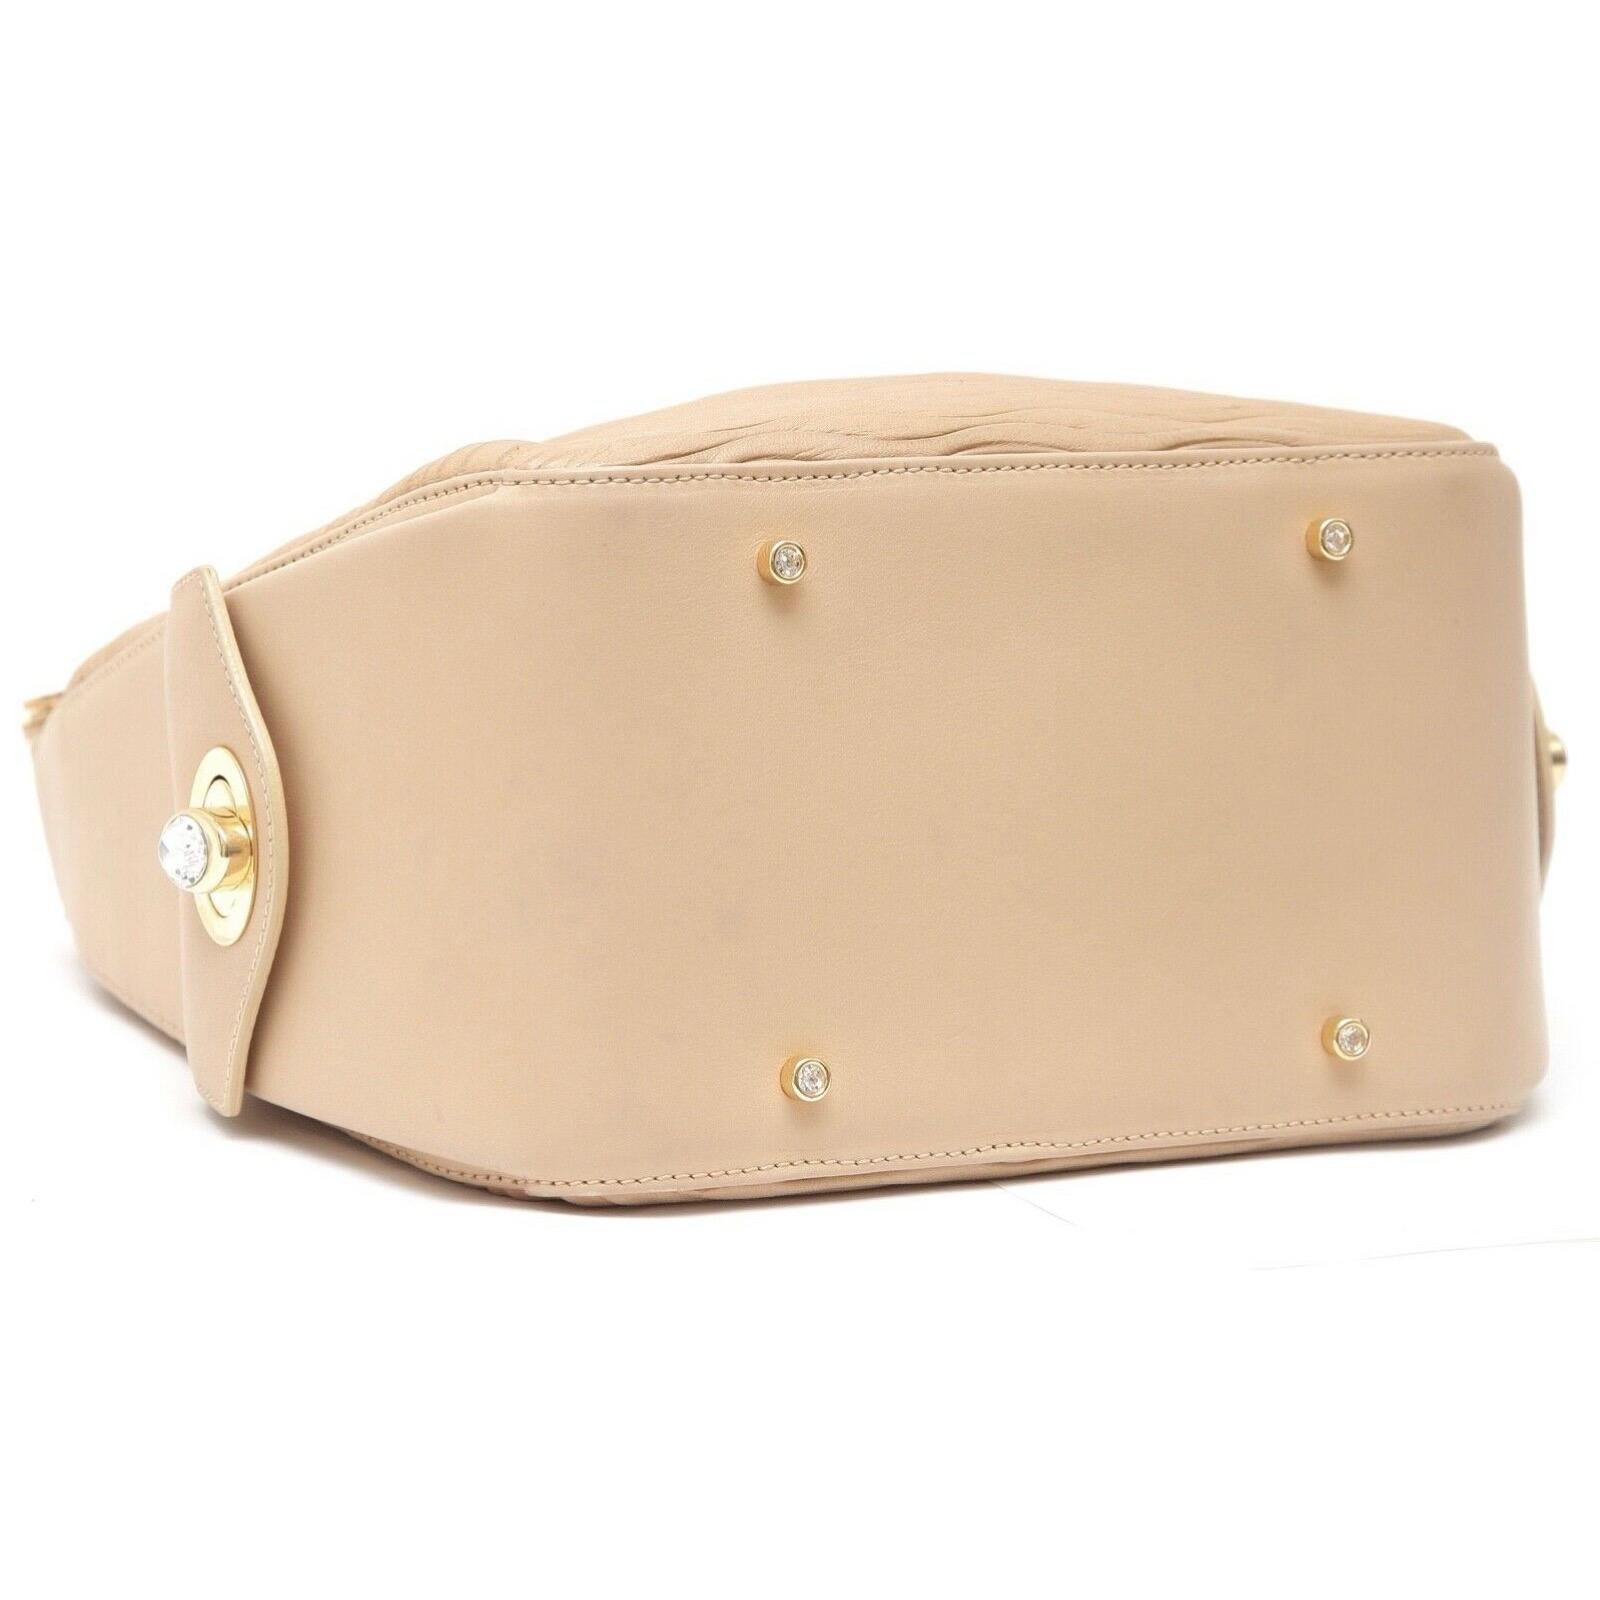 JUDITH LEIBER Leather Shoulder Bag Hobo Beige Gold-Tone HW Crystal Top Zipper For Sale 2